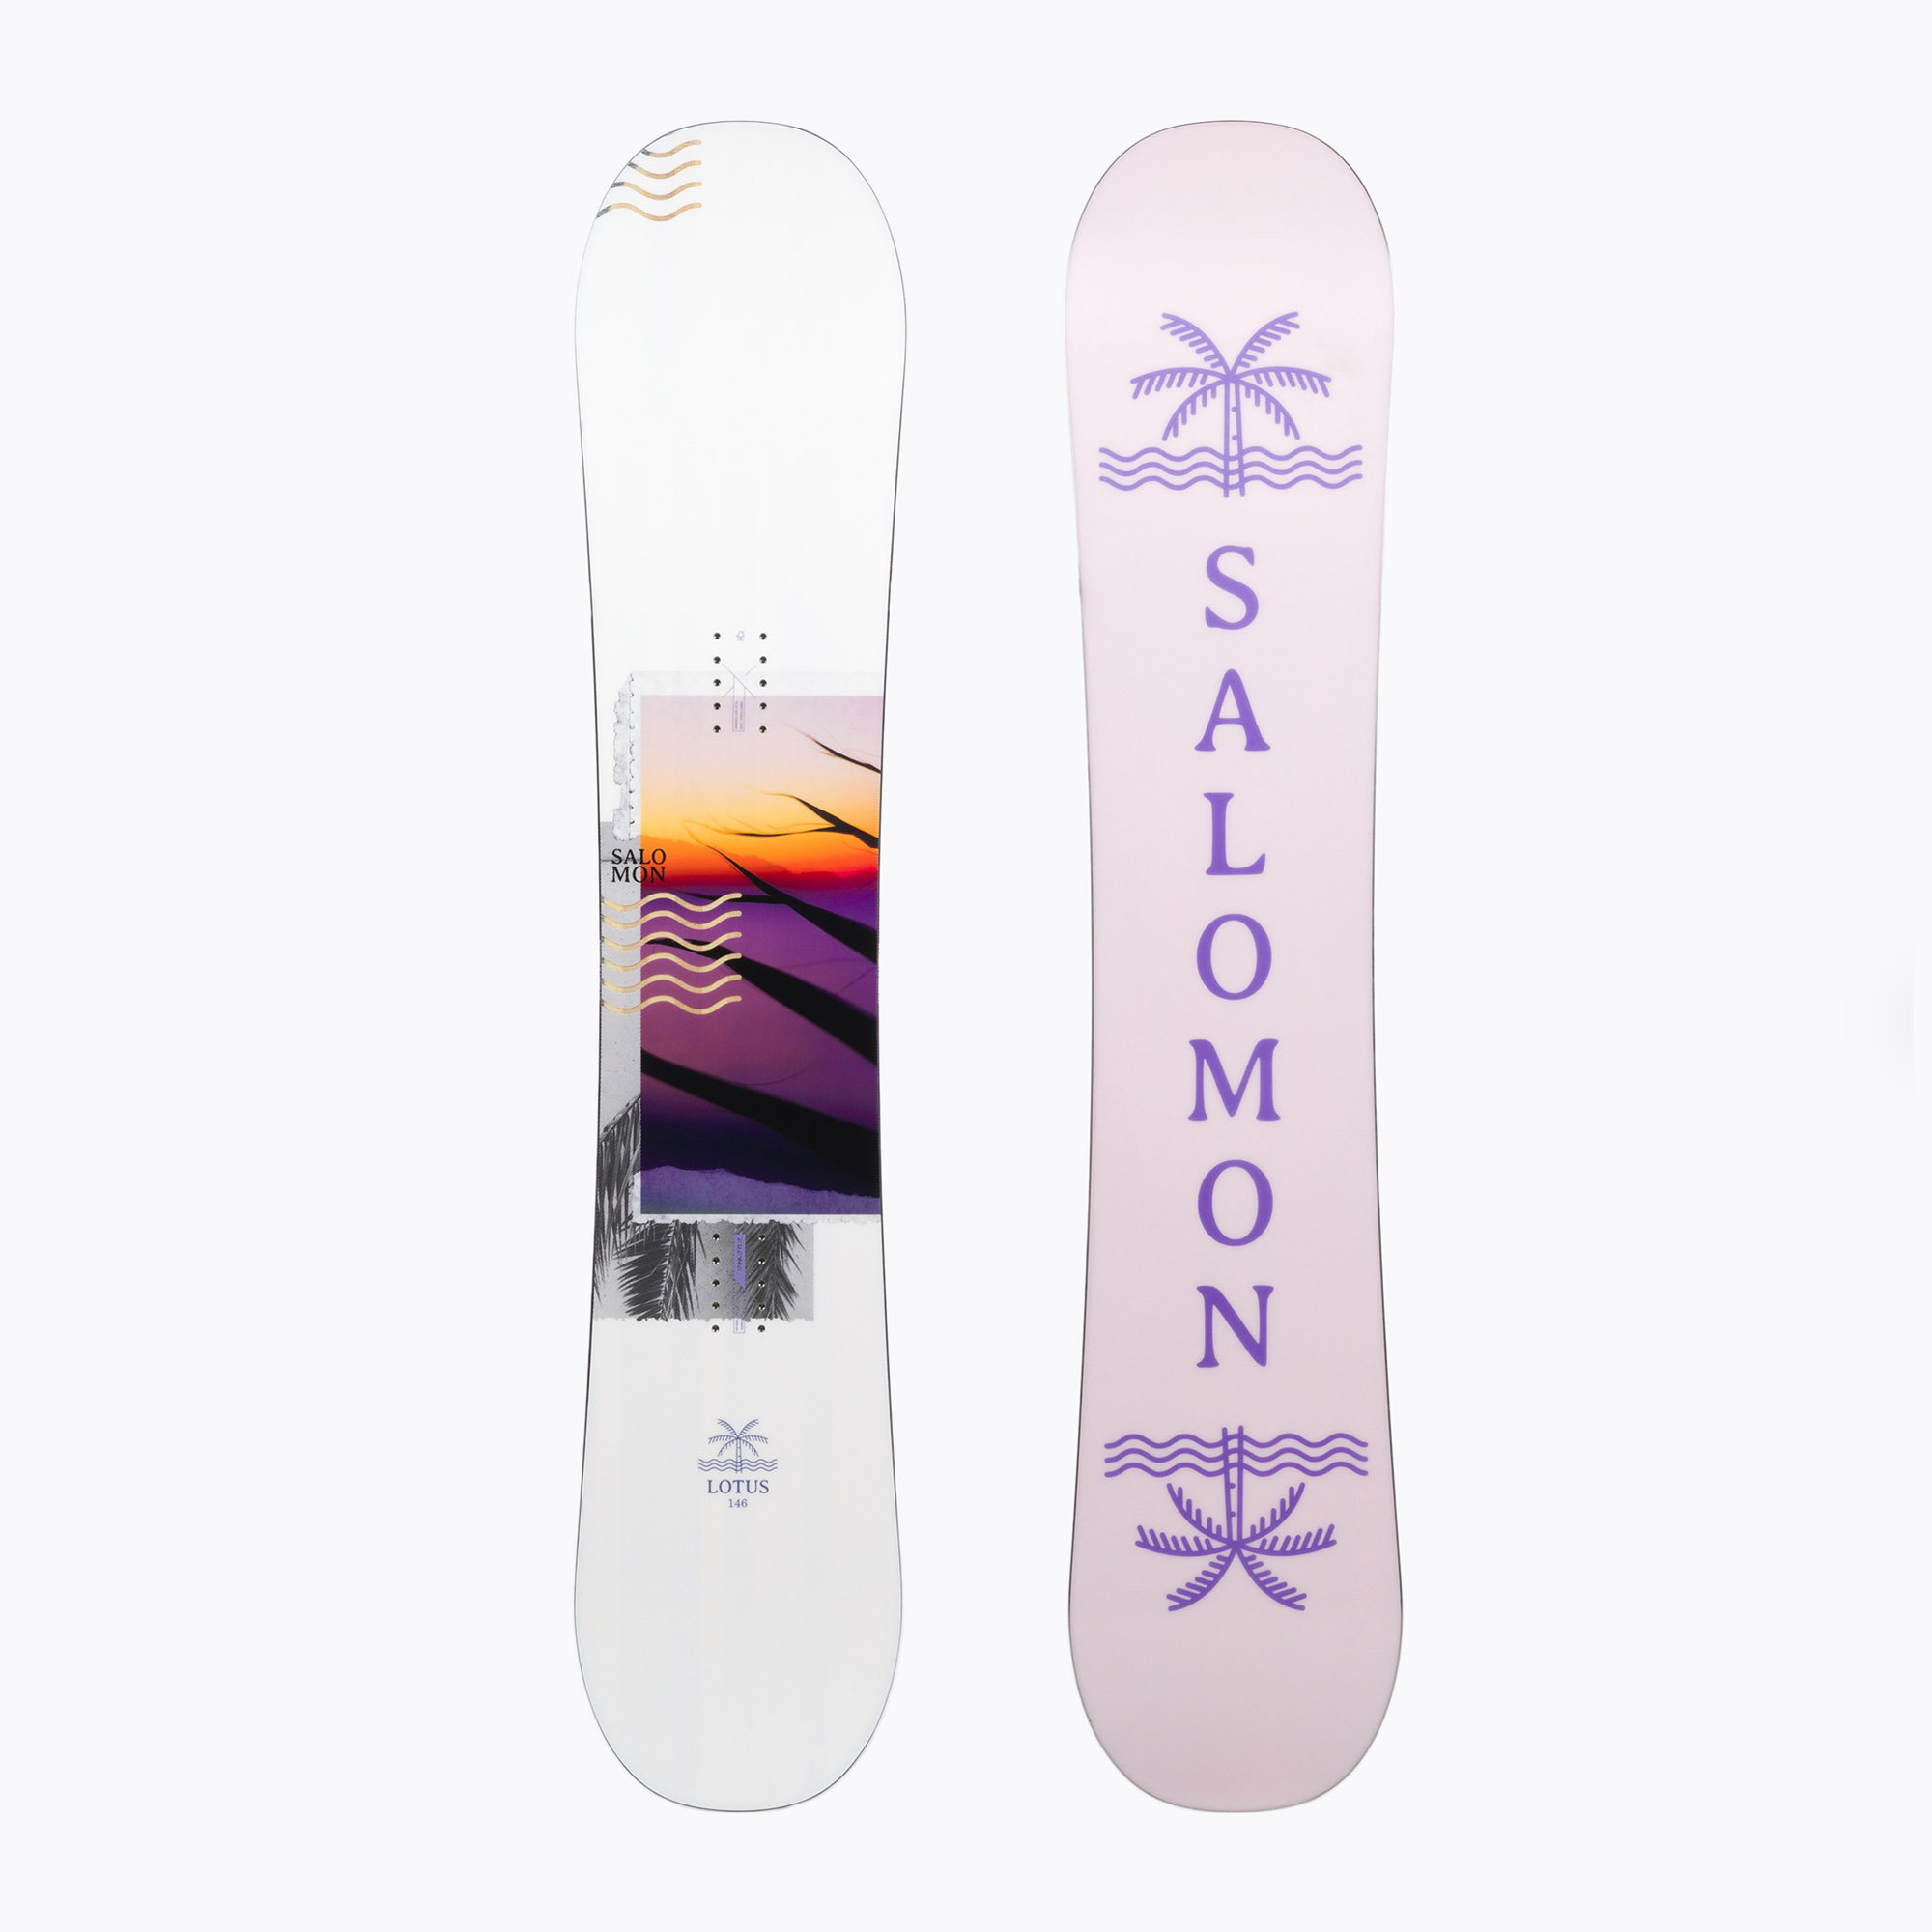 Dámsky snowboard Salomon Lotus biely L47186